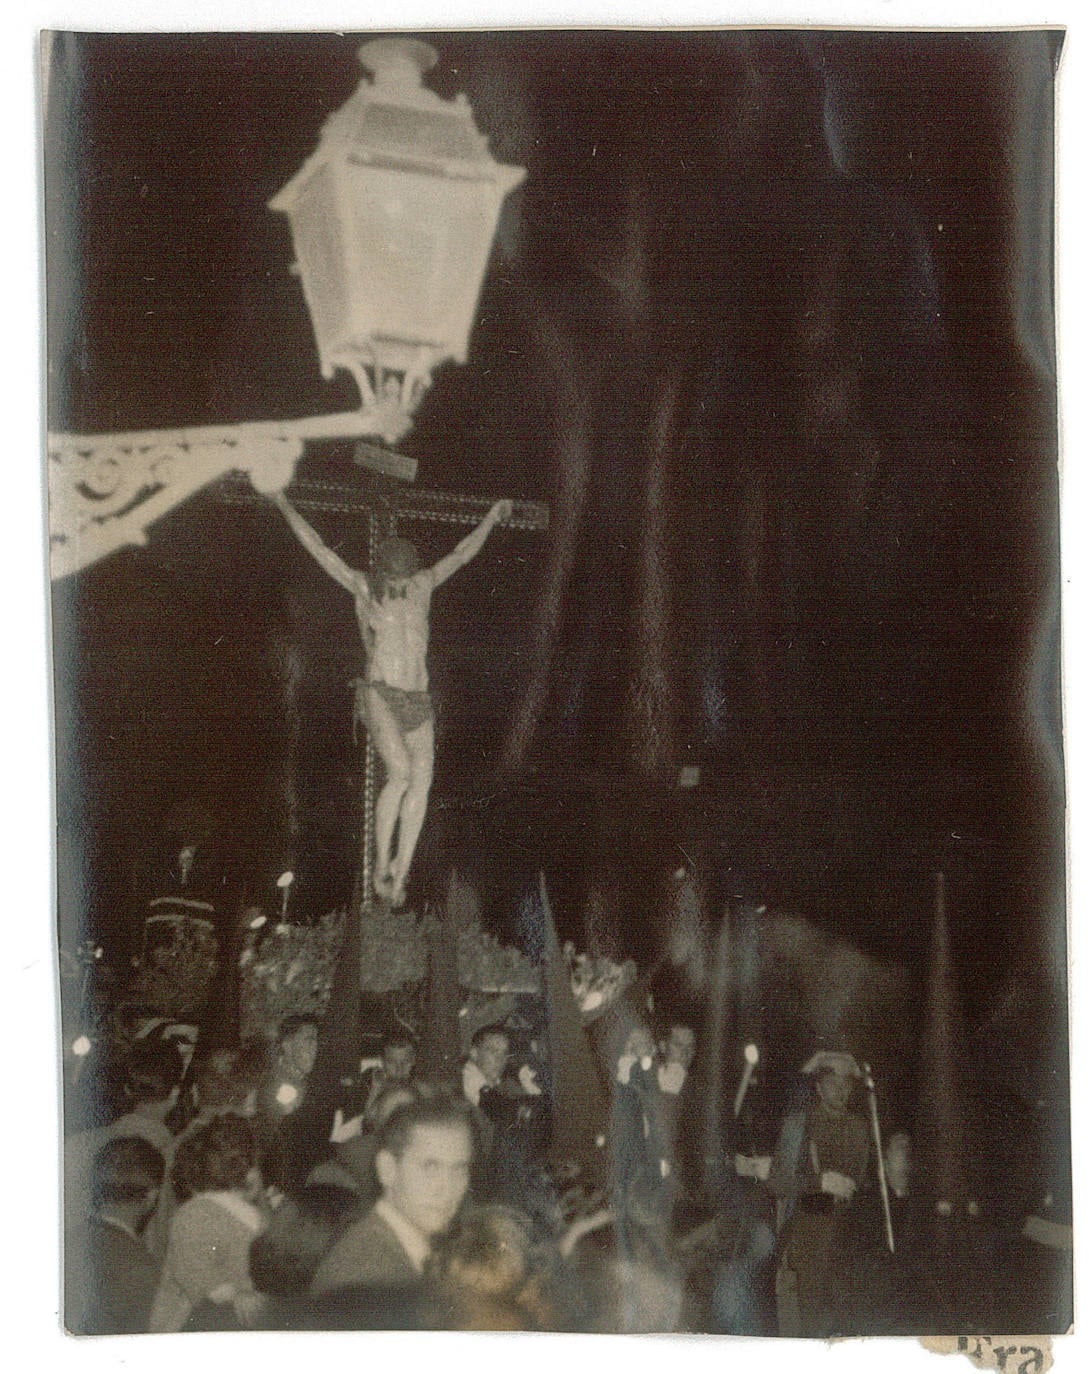 La Hermandad del Silencio se fundó en 1924. Desde sus orígenes procesionó la imagen del crucificado que talló en el siglo XVII José de Mora. Esta fotografía es de 1951